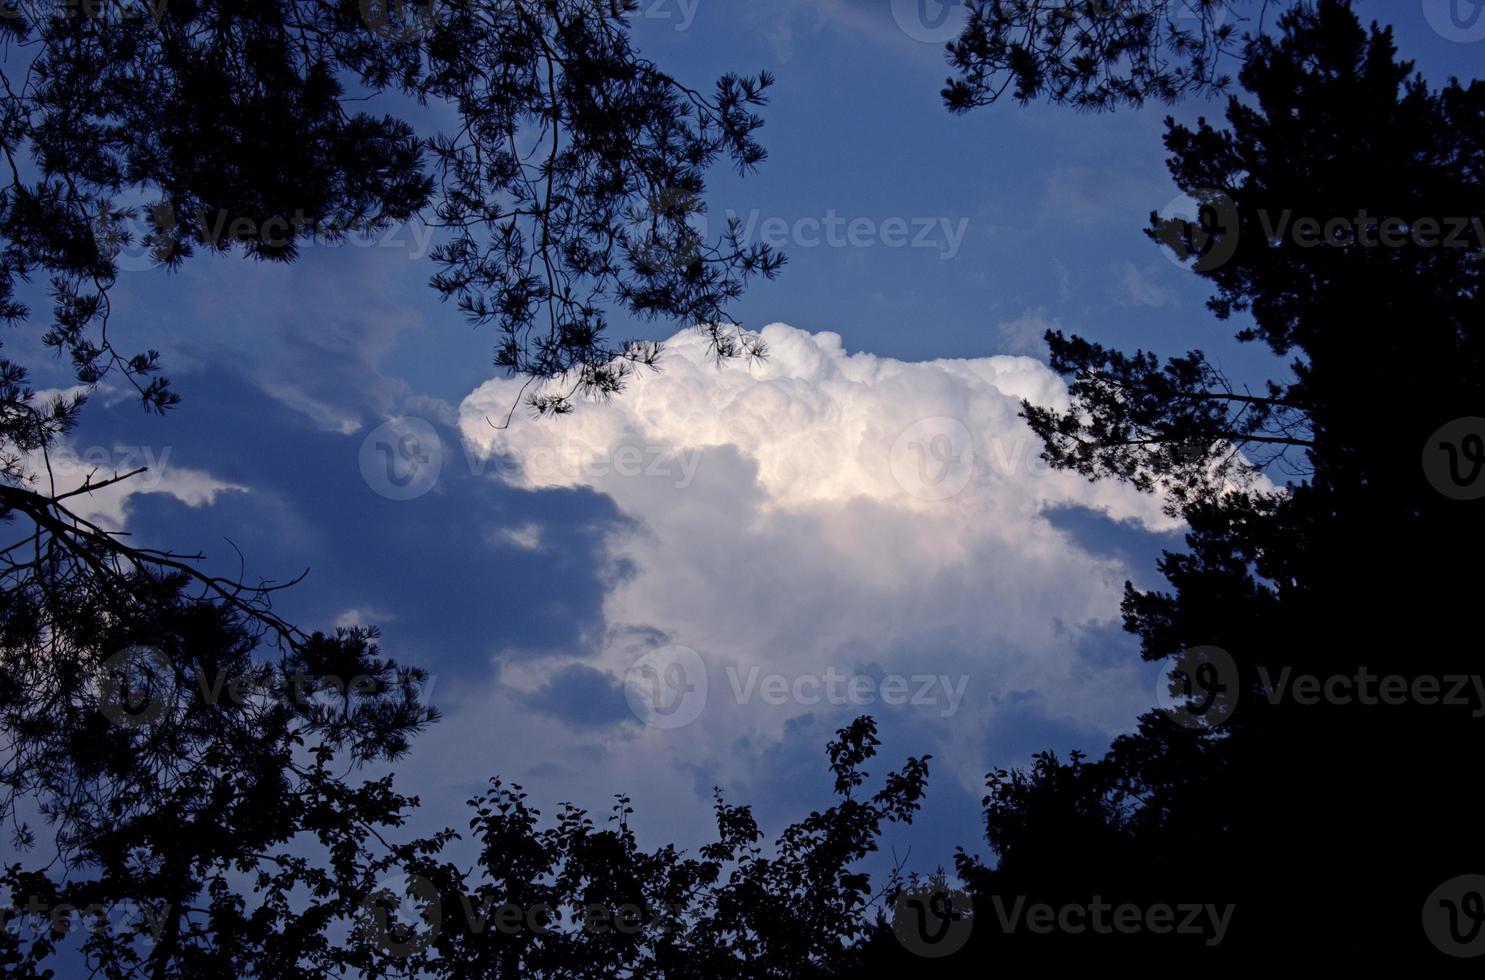 vista di nuvole sul cielo blu incorniciato da rami di albero foto